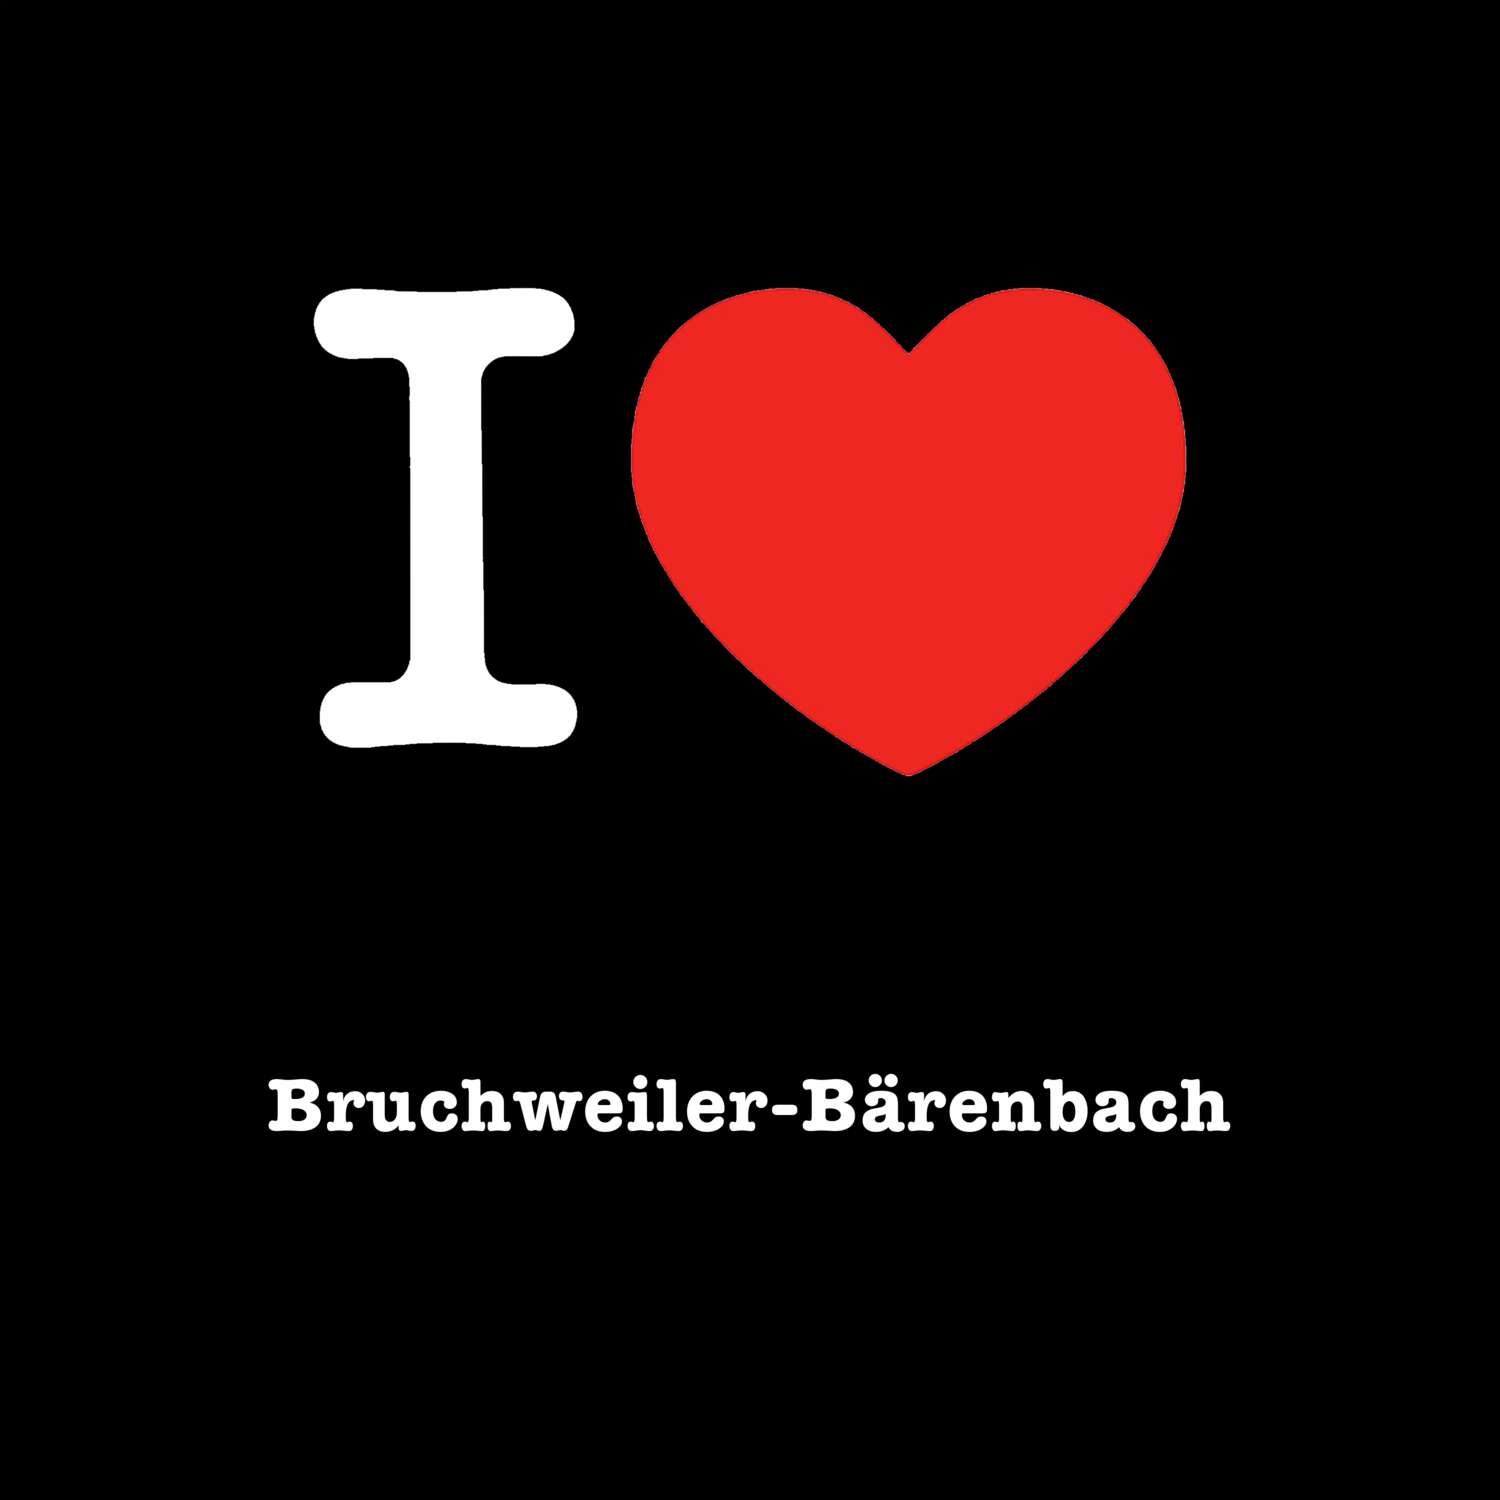 Bruchweiler-Bärenbach T-Shirt »I love«